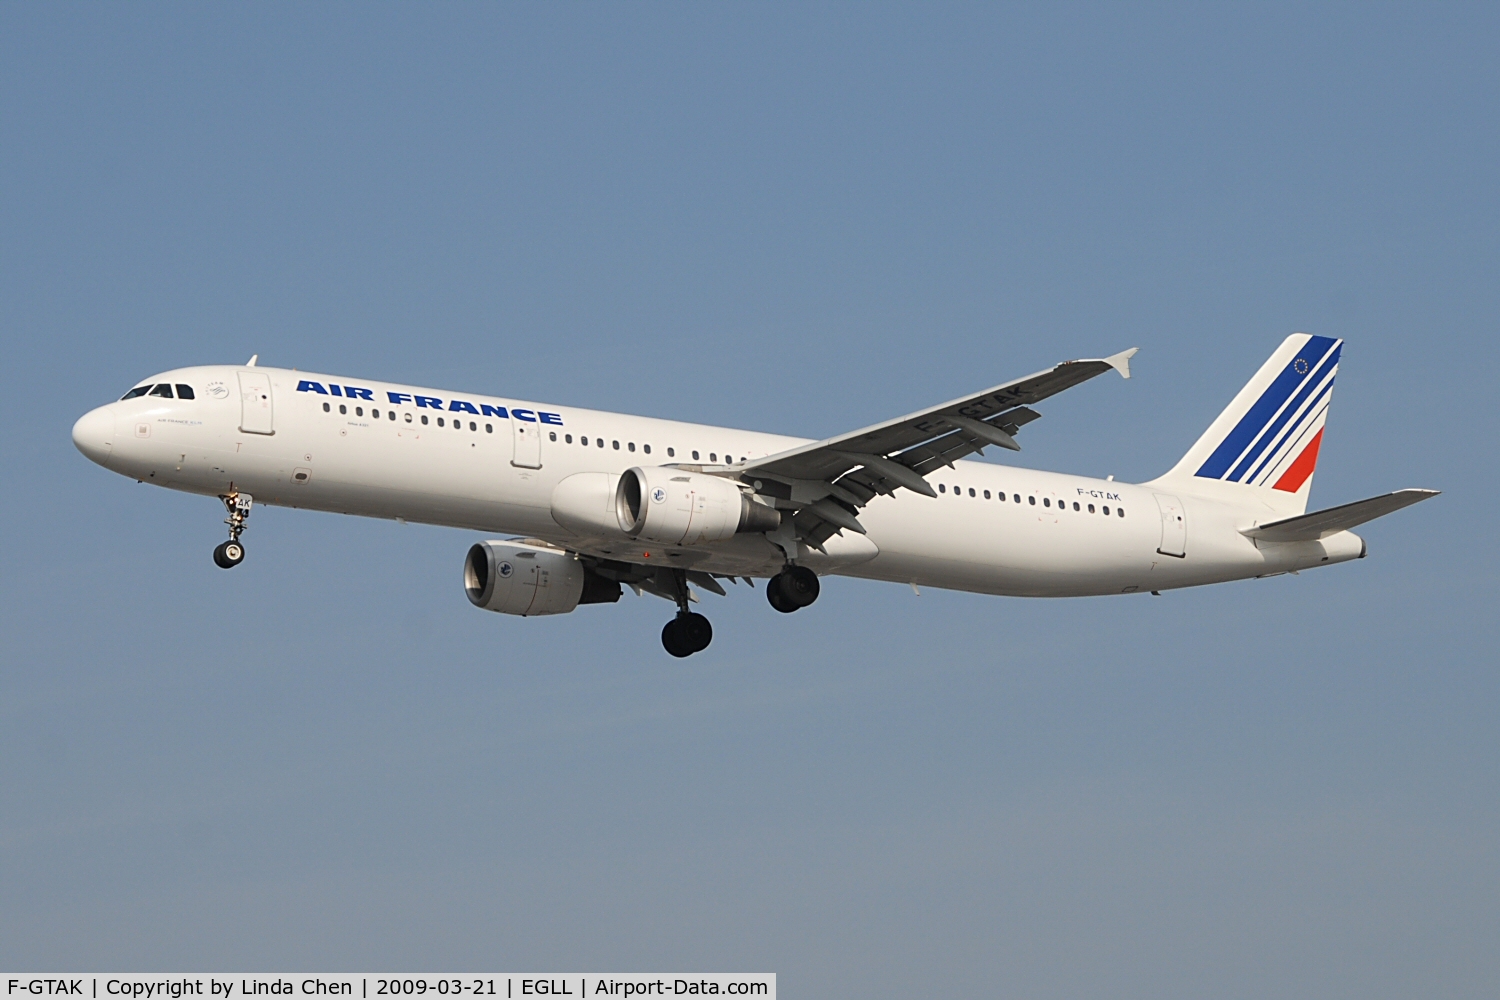 F-GTAK, 2001 Airbus A321-211 C/N 1658, Air France A321